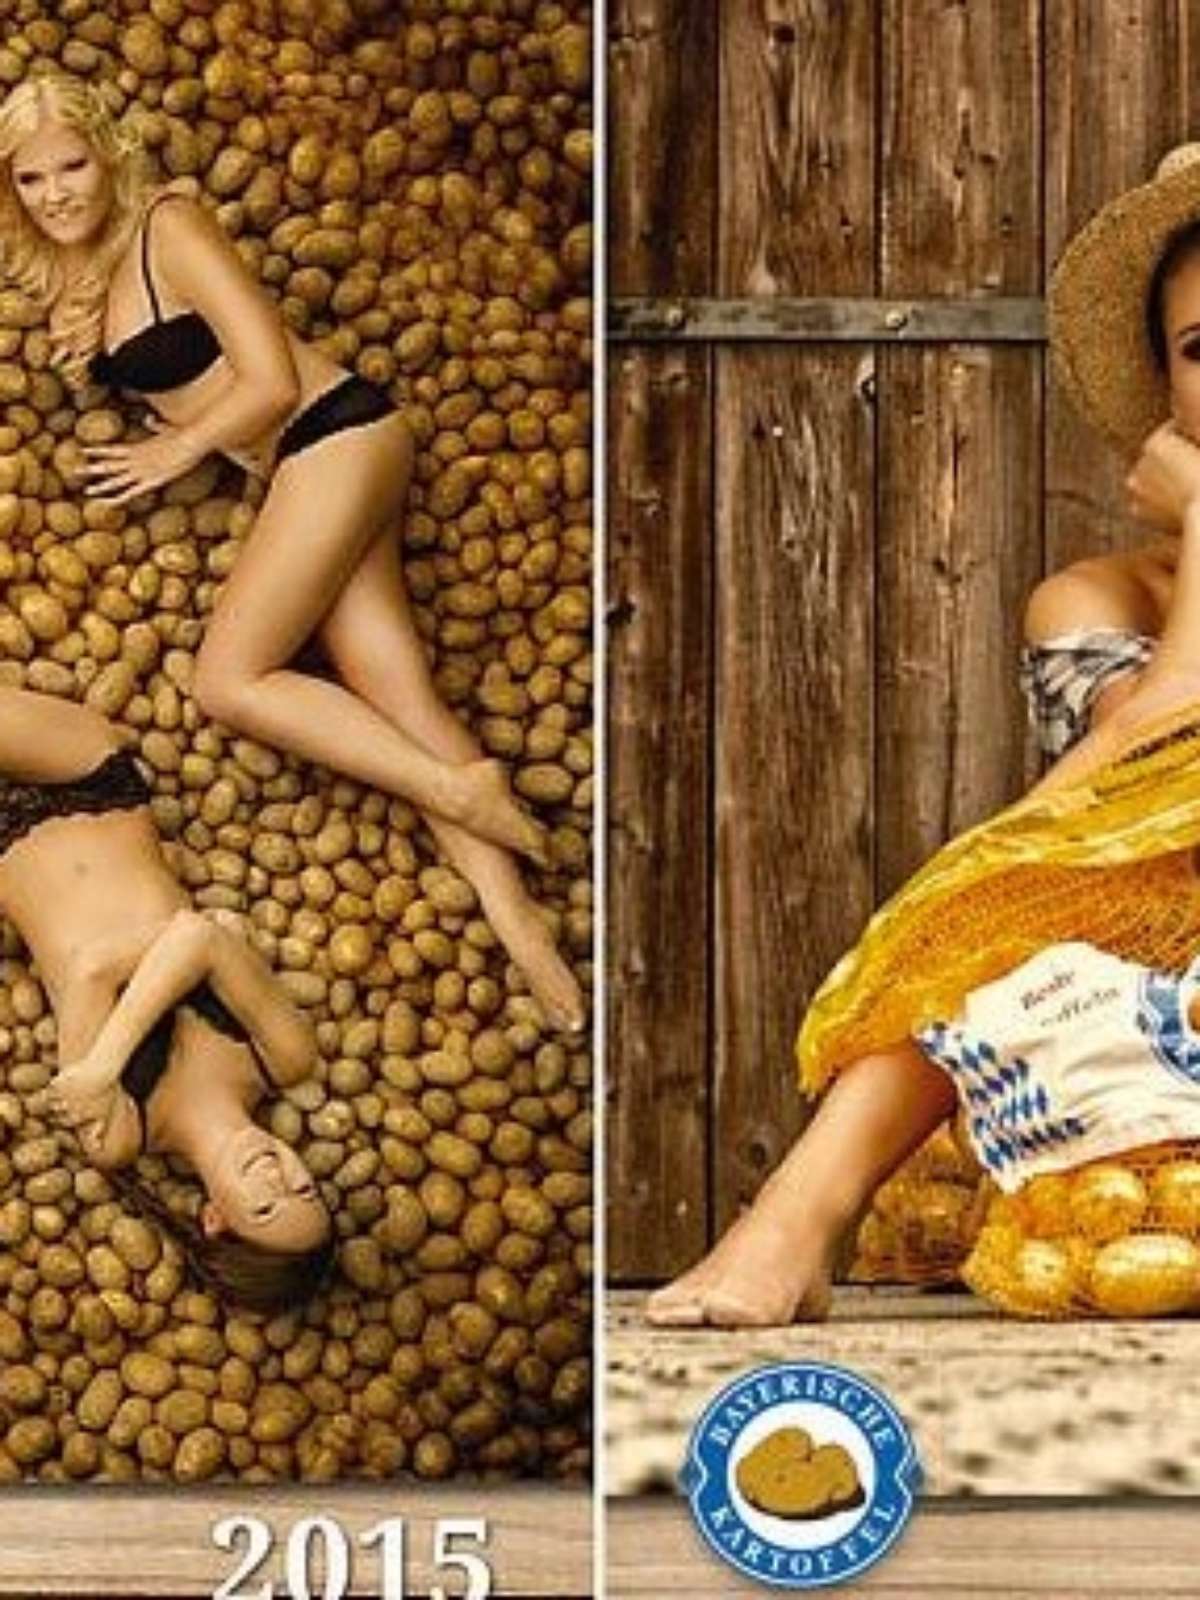 Batata quente fazendeiros alemães lançam calendário sexy